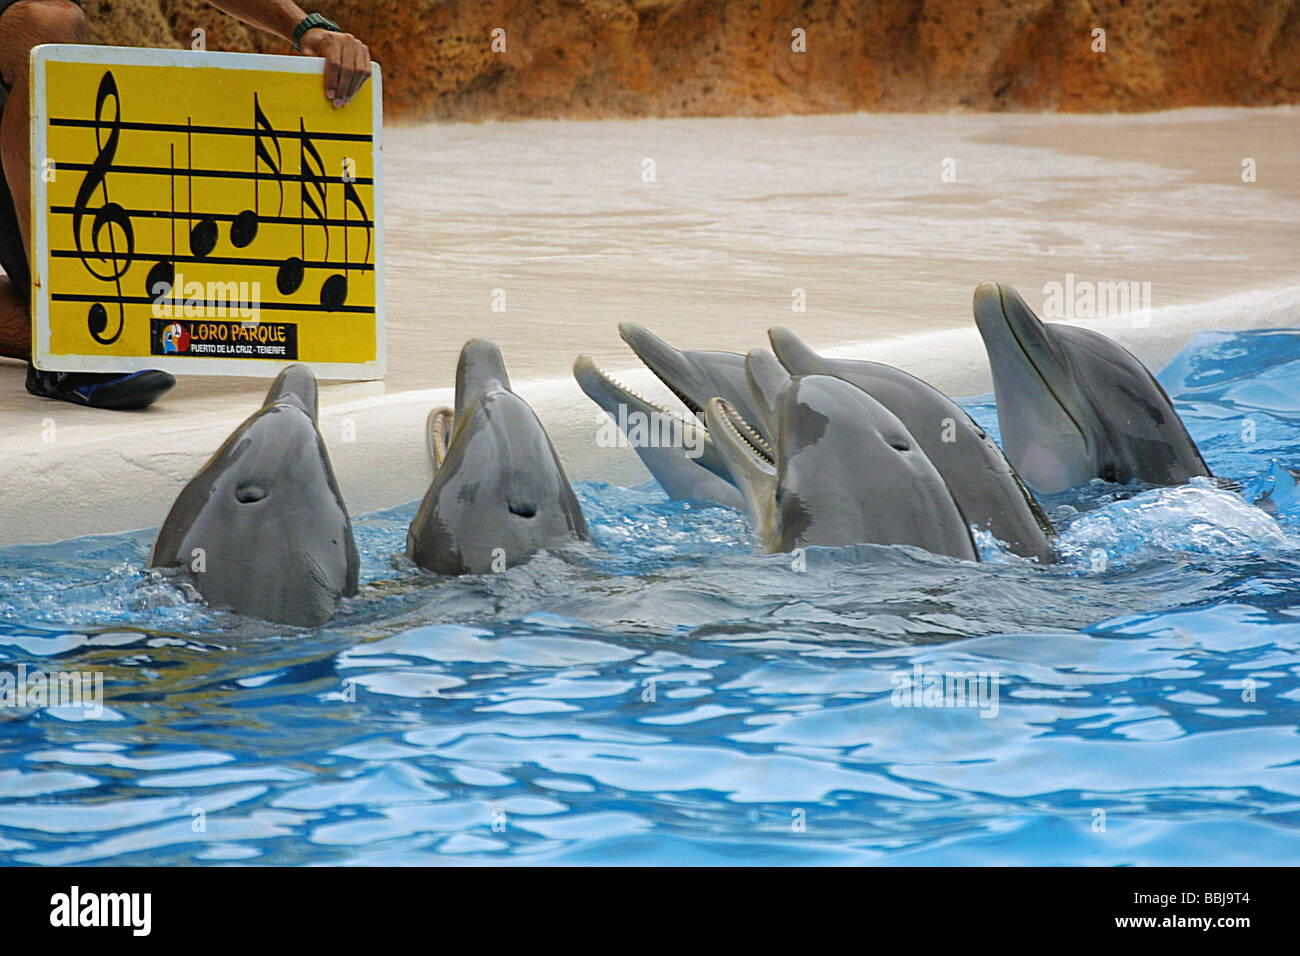 Le chant des dauphins dans un spectacle de dauphins Banque D'Images